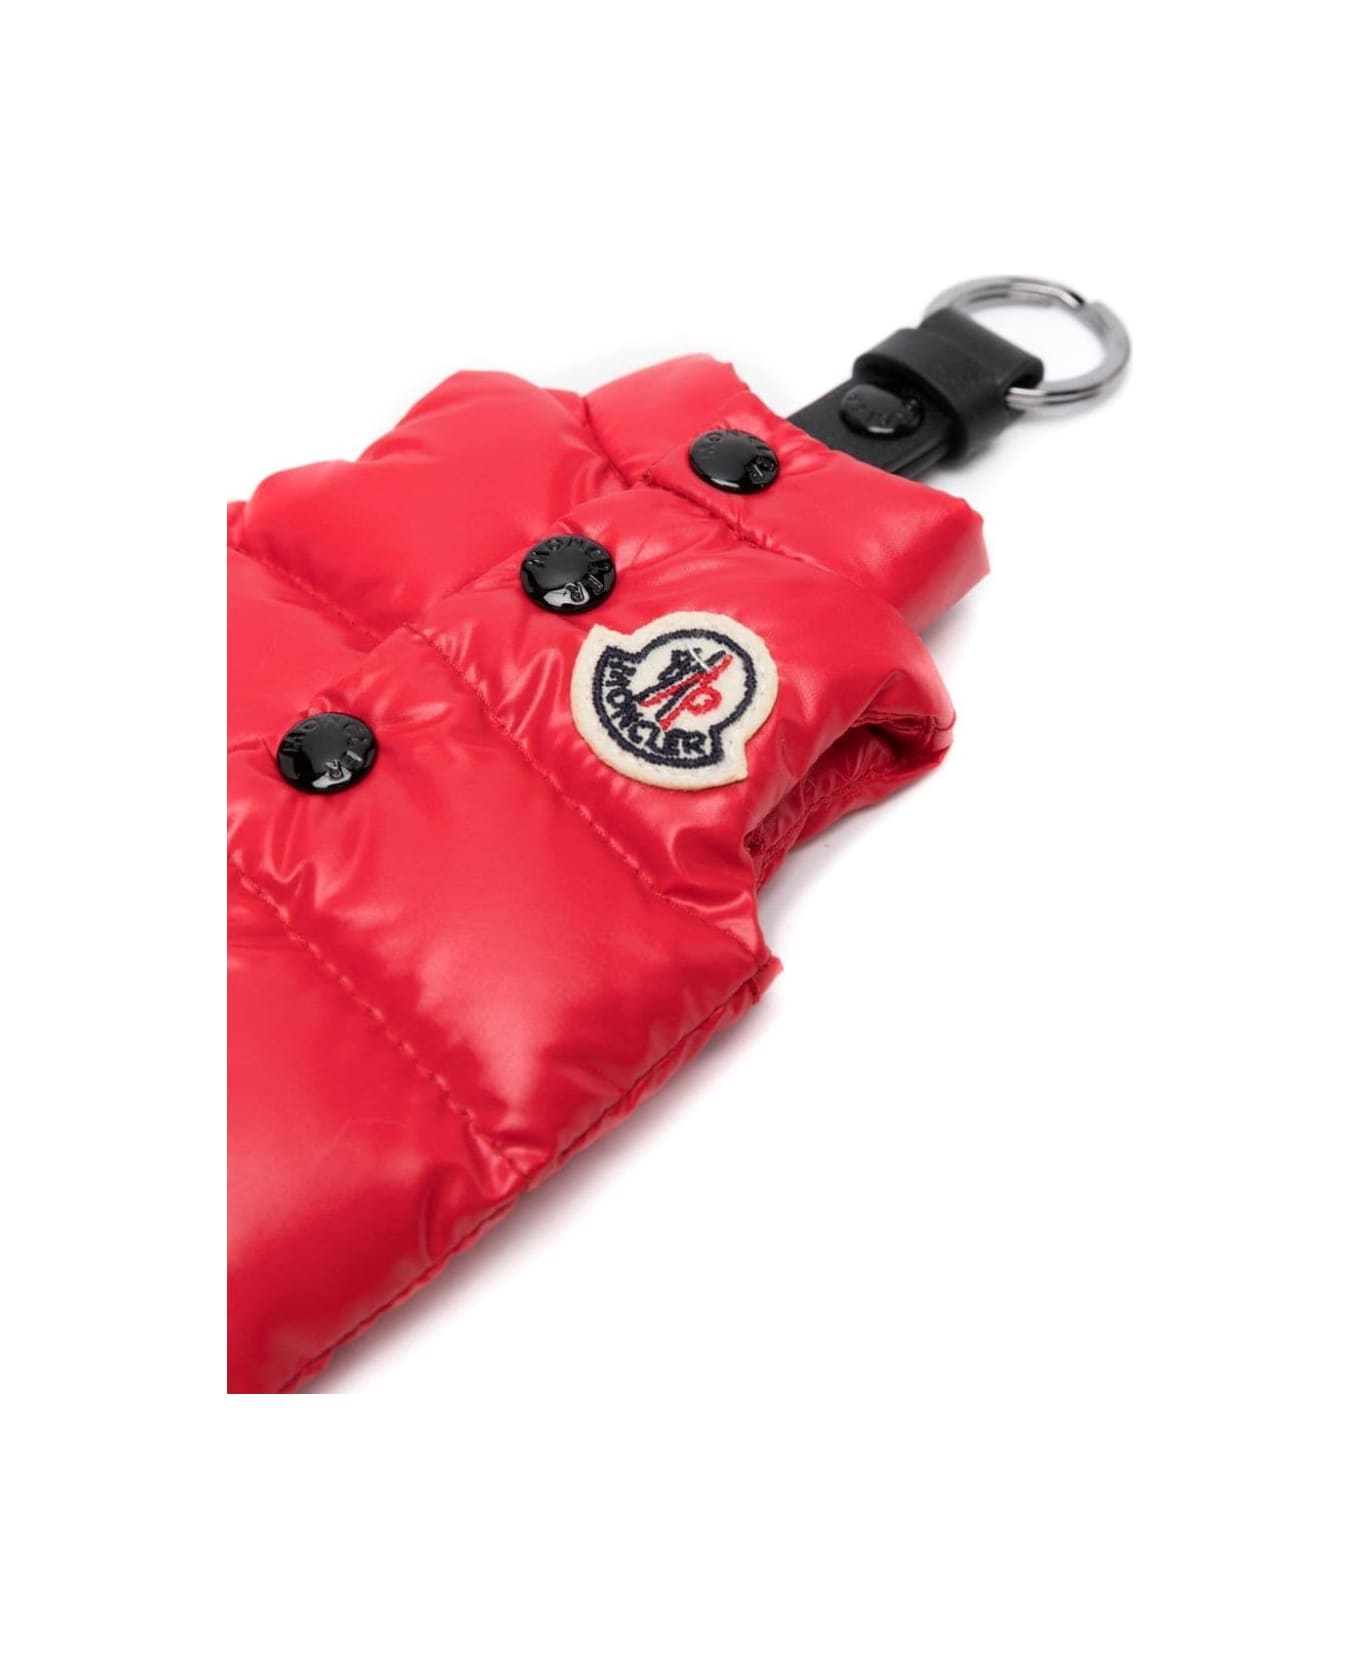 Moncler Red Vest Shaped Keyring - Red